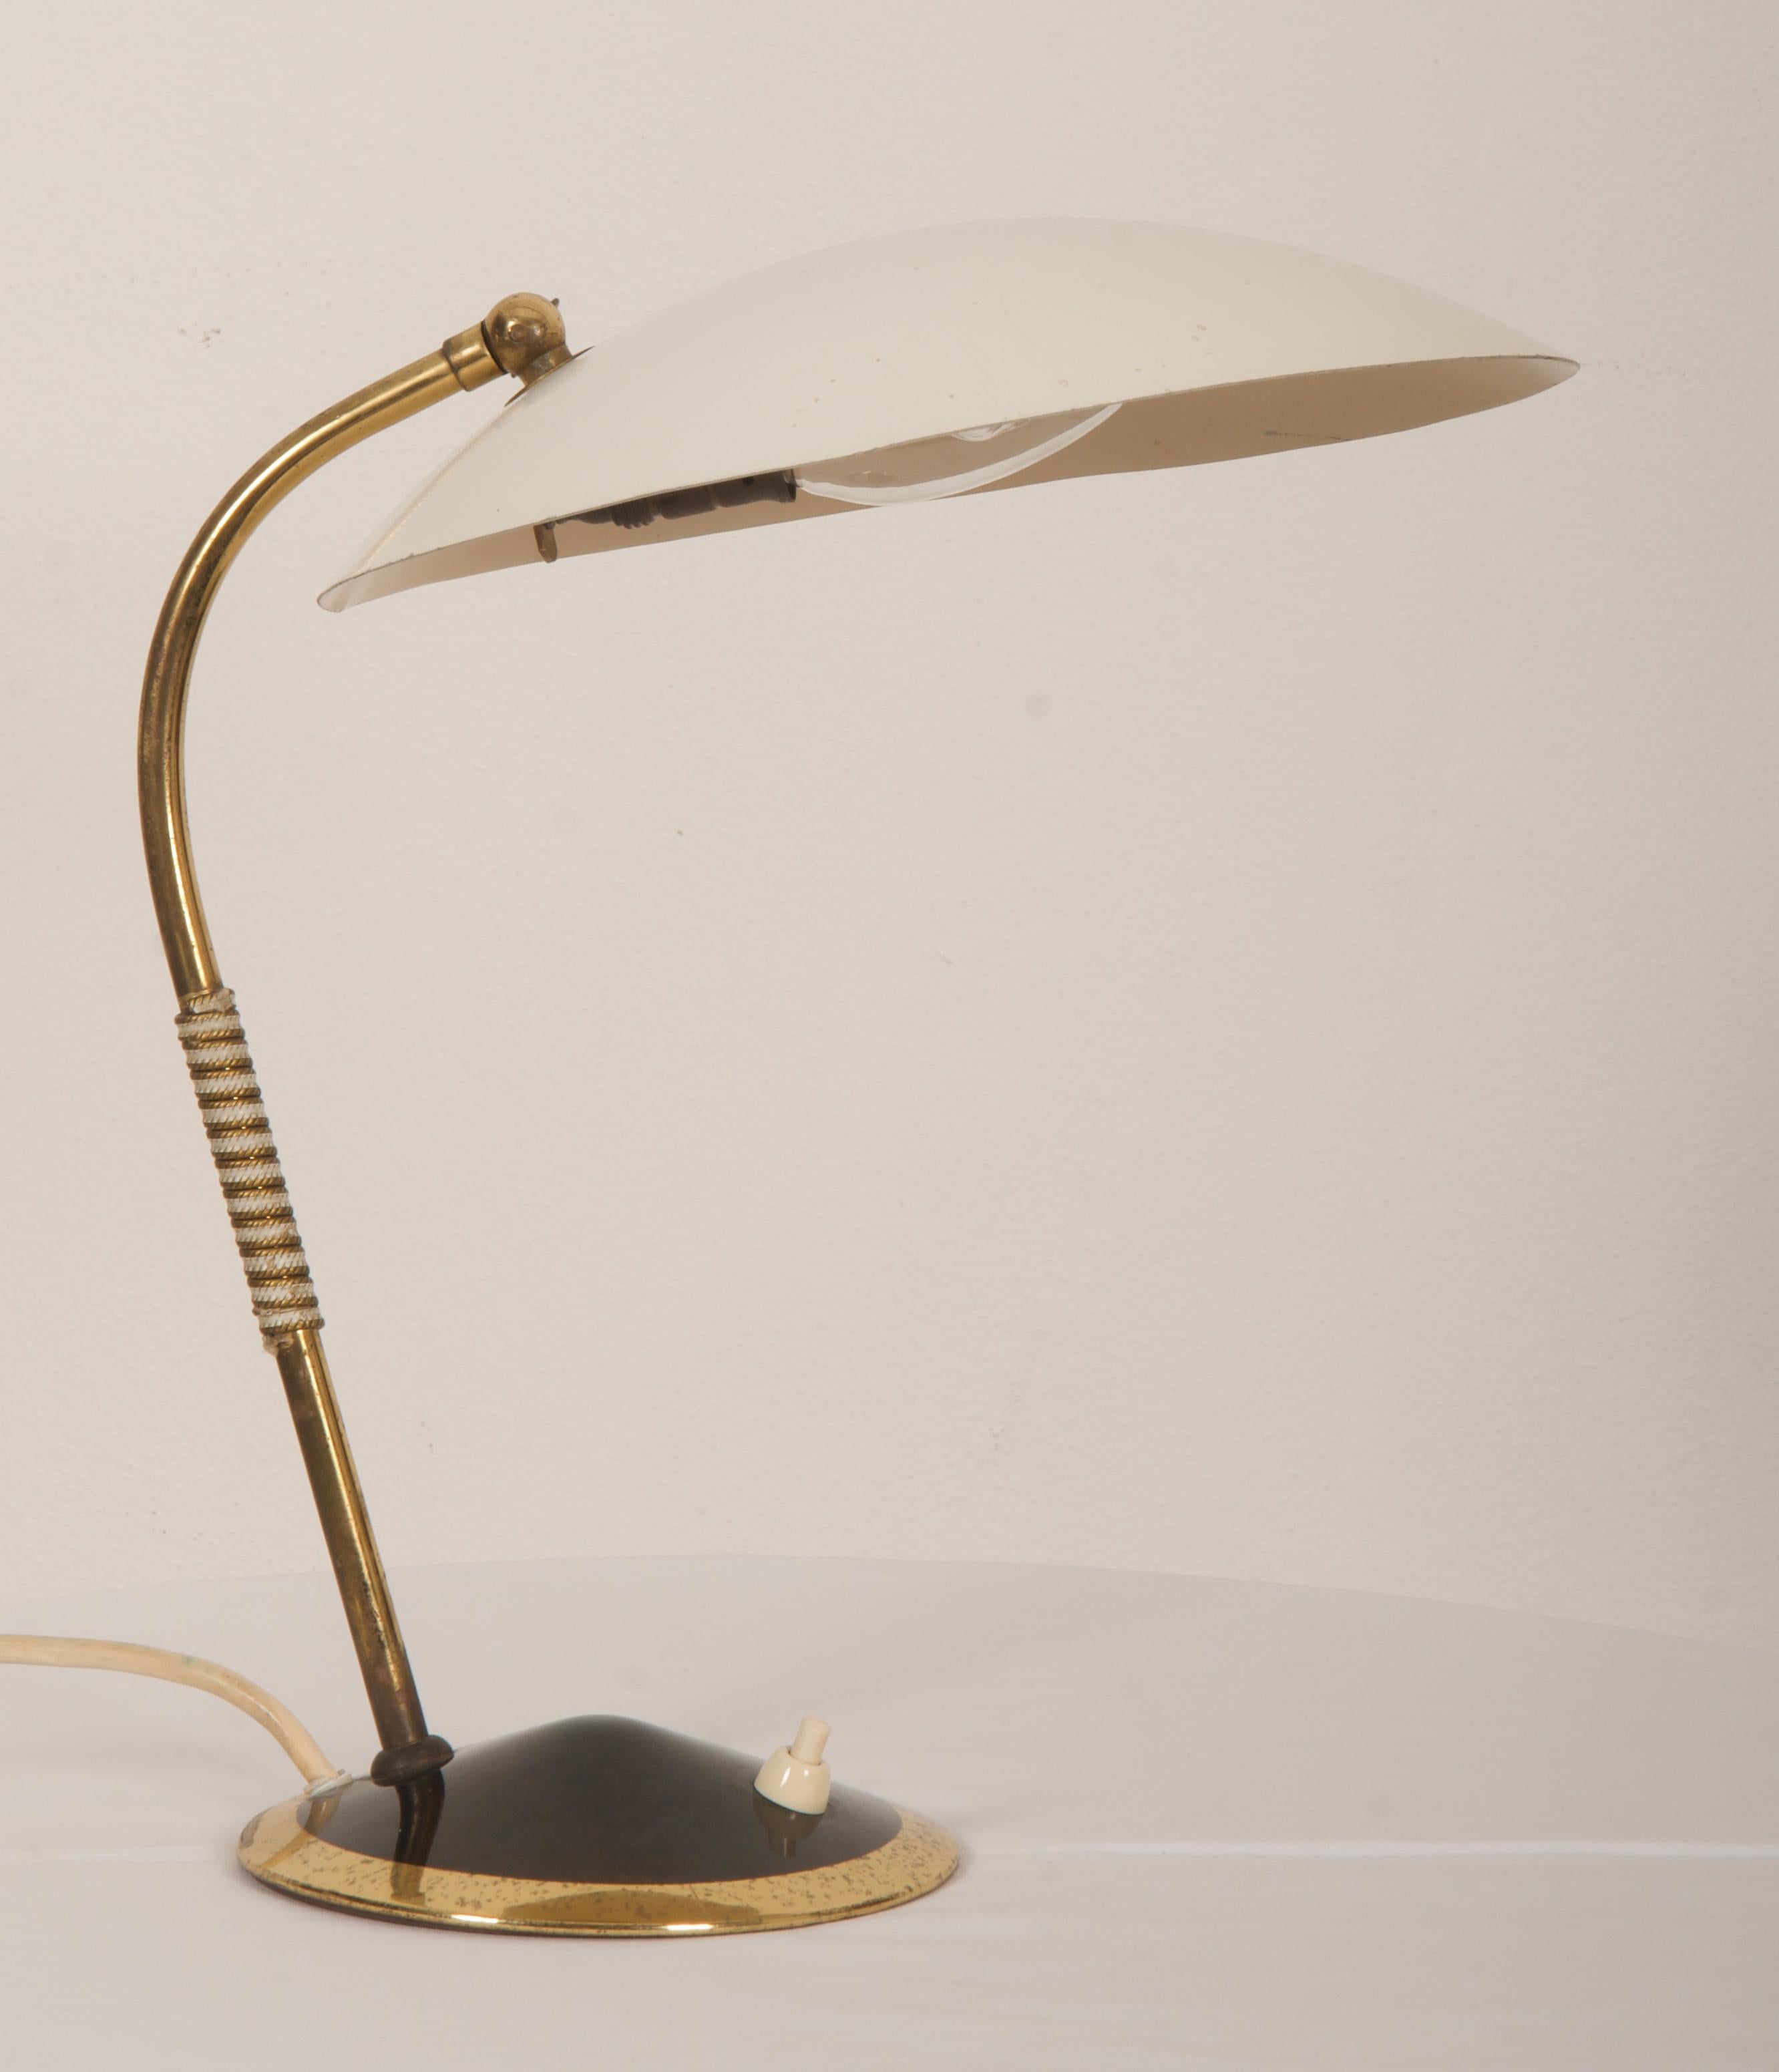 Messing-/Stahlkonstruktion mit kugelförmigem Lampenschirm, weiß lackiert und mit einer E14-Fassung ausgestattet, Modell. Entworfen um 1950 in Wien.
Der Originalzustand ist hervorragend.
 